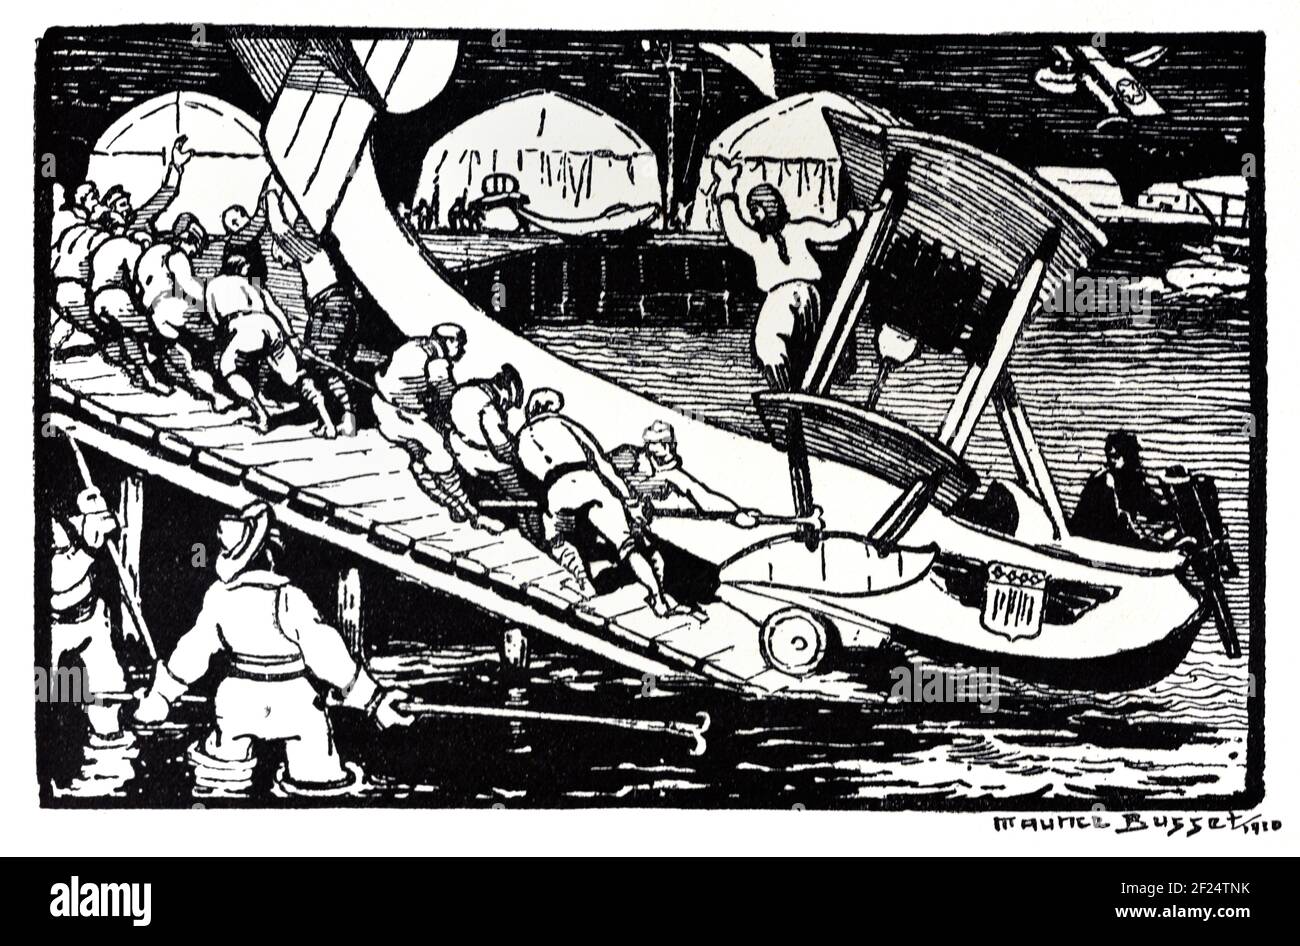 Start von Early Flying Boat oder Wasserflugzeug auf Slipway, Bootsrampe, Launch oder Boat Deployer Vintage Wood Engraving, Woodcut oder Woodblock Print von Maurice Busset 1920 Stockfoto